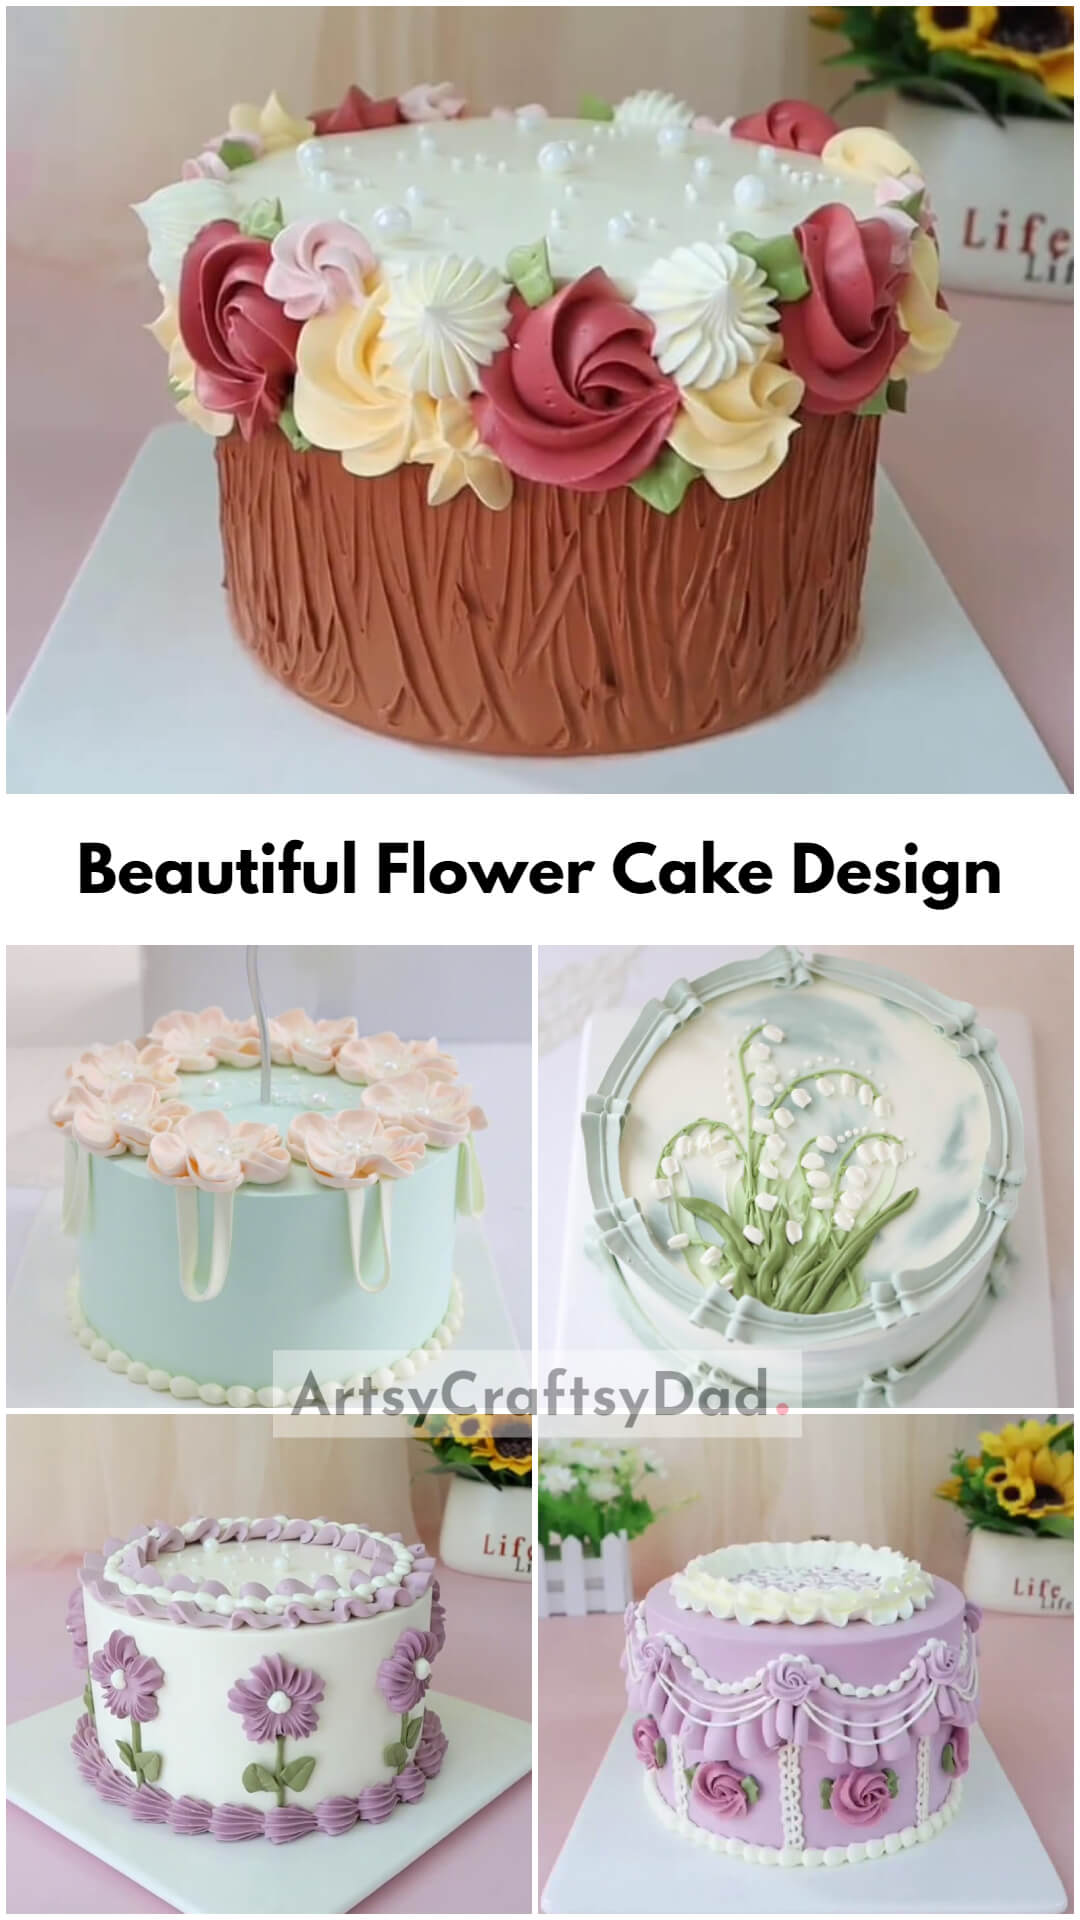 Beautiful Flower Cake Design Ideas